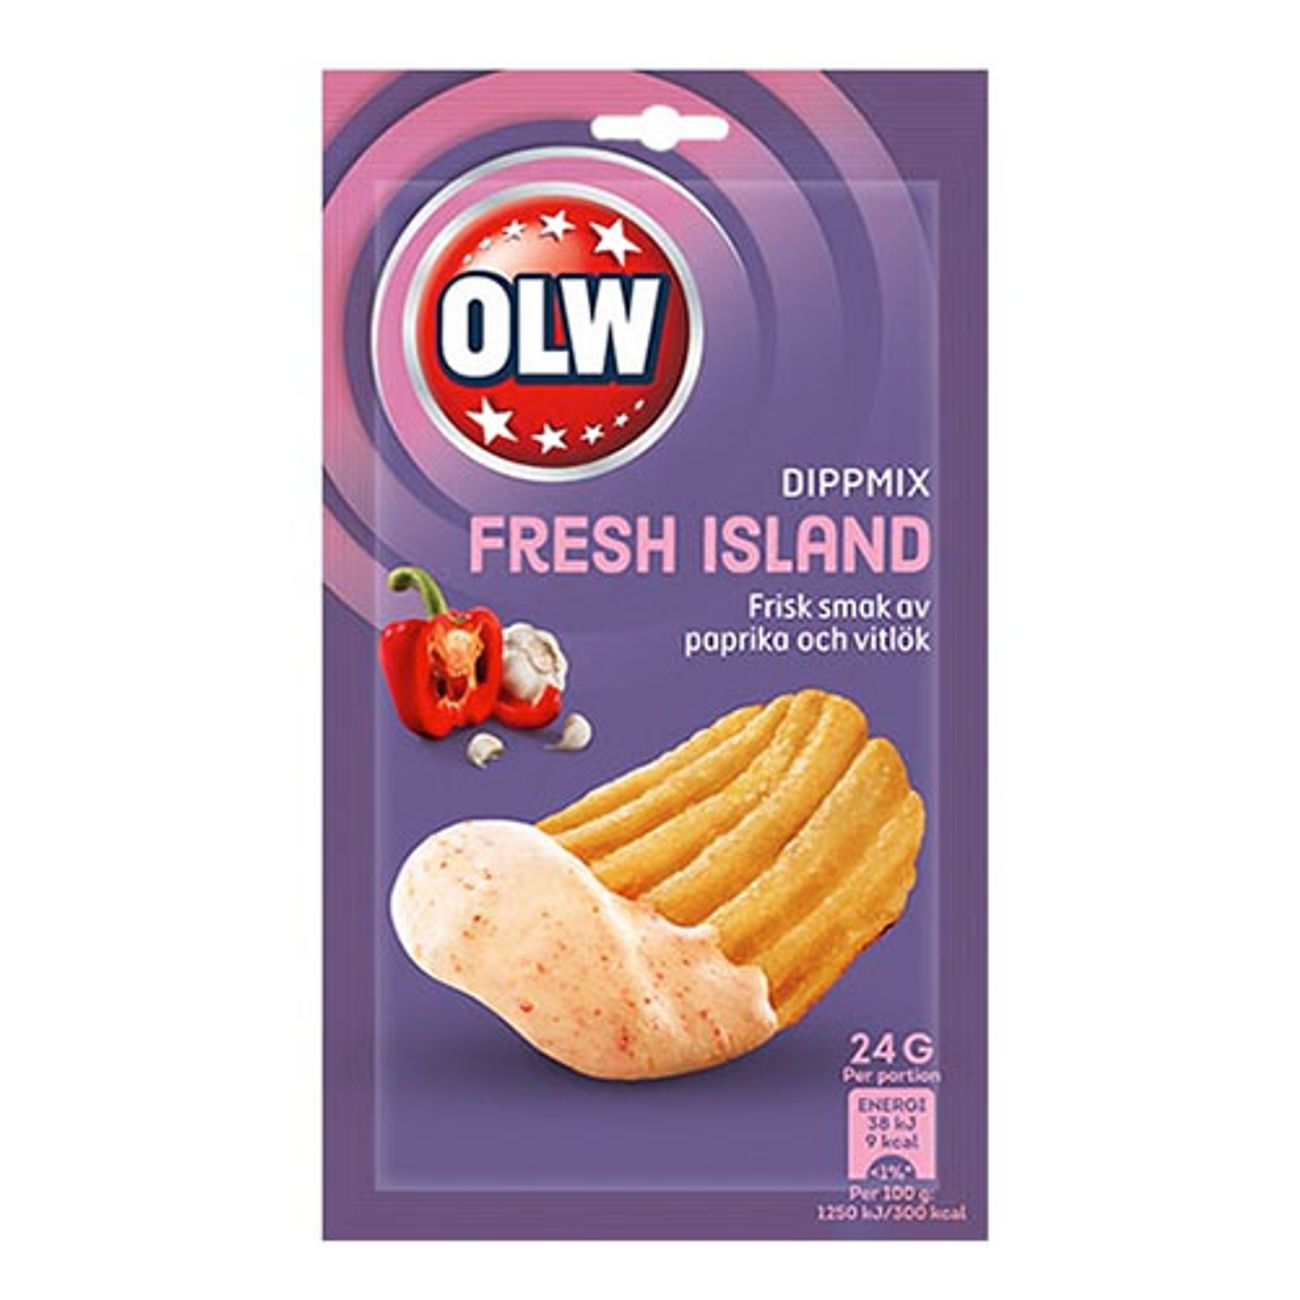 olw-dipmix-fresh-island-1